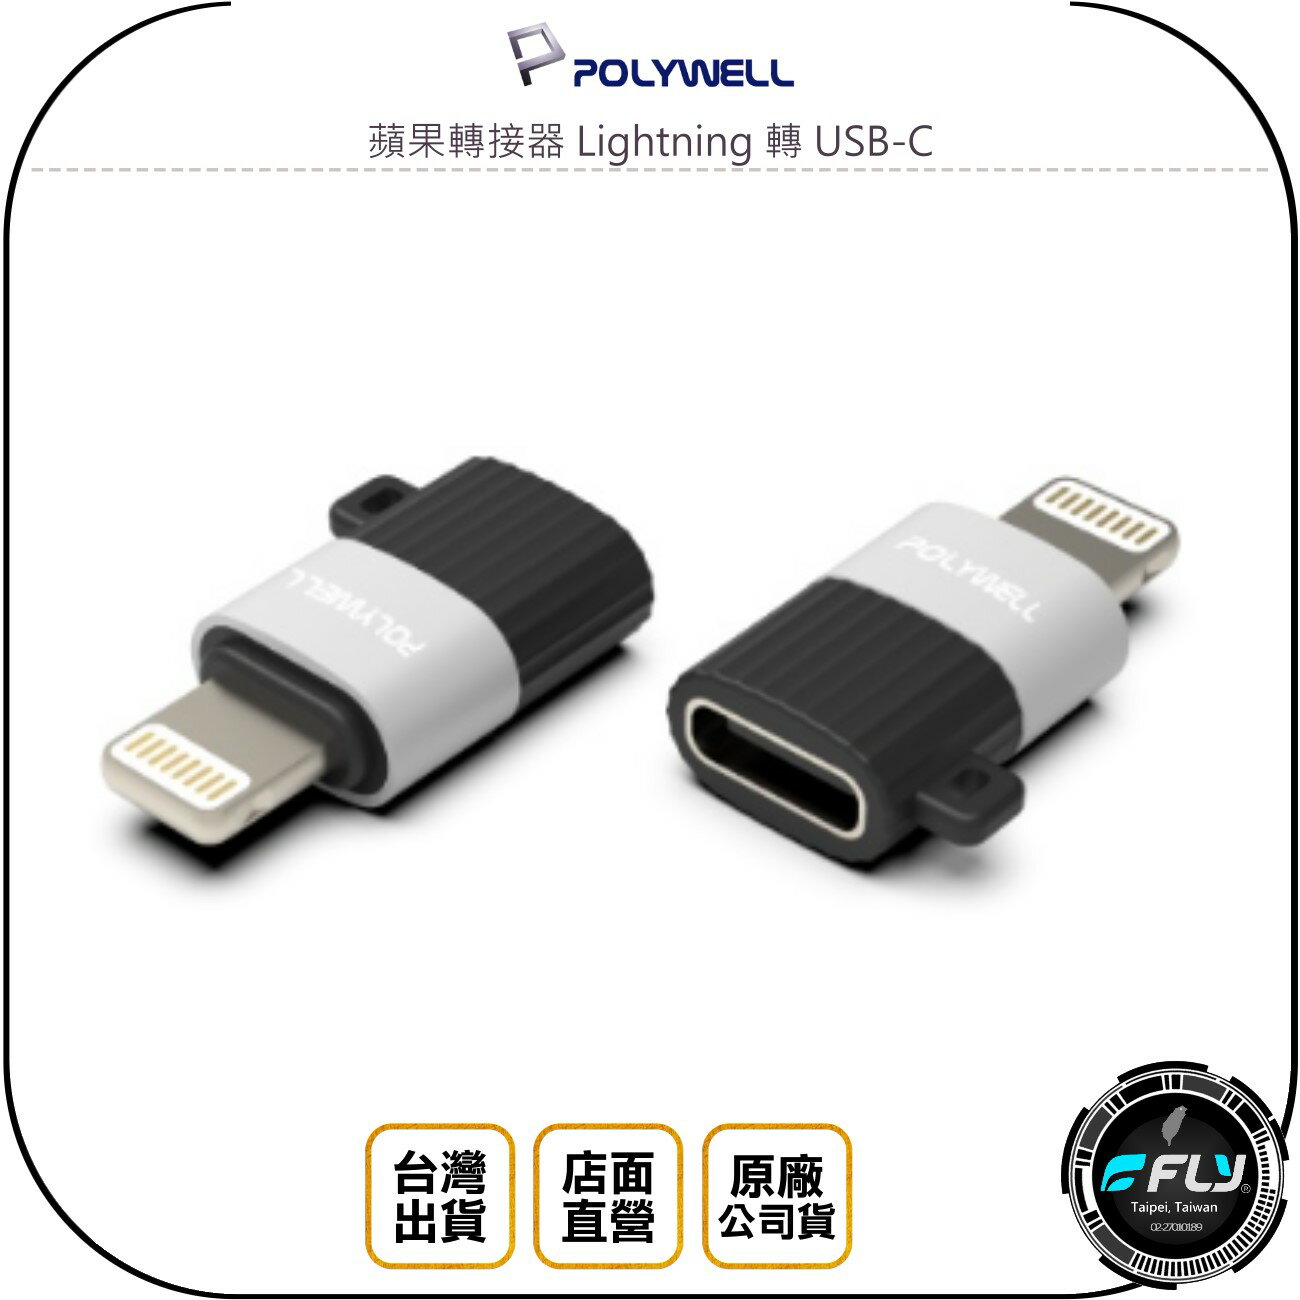 《飛翔無線3C》POLYWELL 寶利威爾 蘋果轉接器 Lightning 轉 USB-C◉iPhone轉TYPE-C